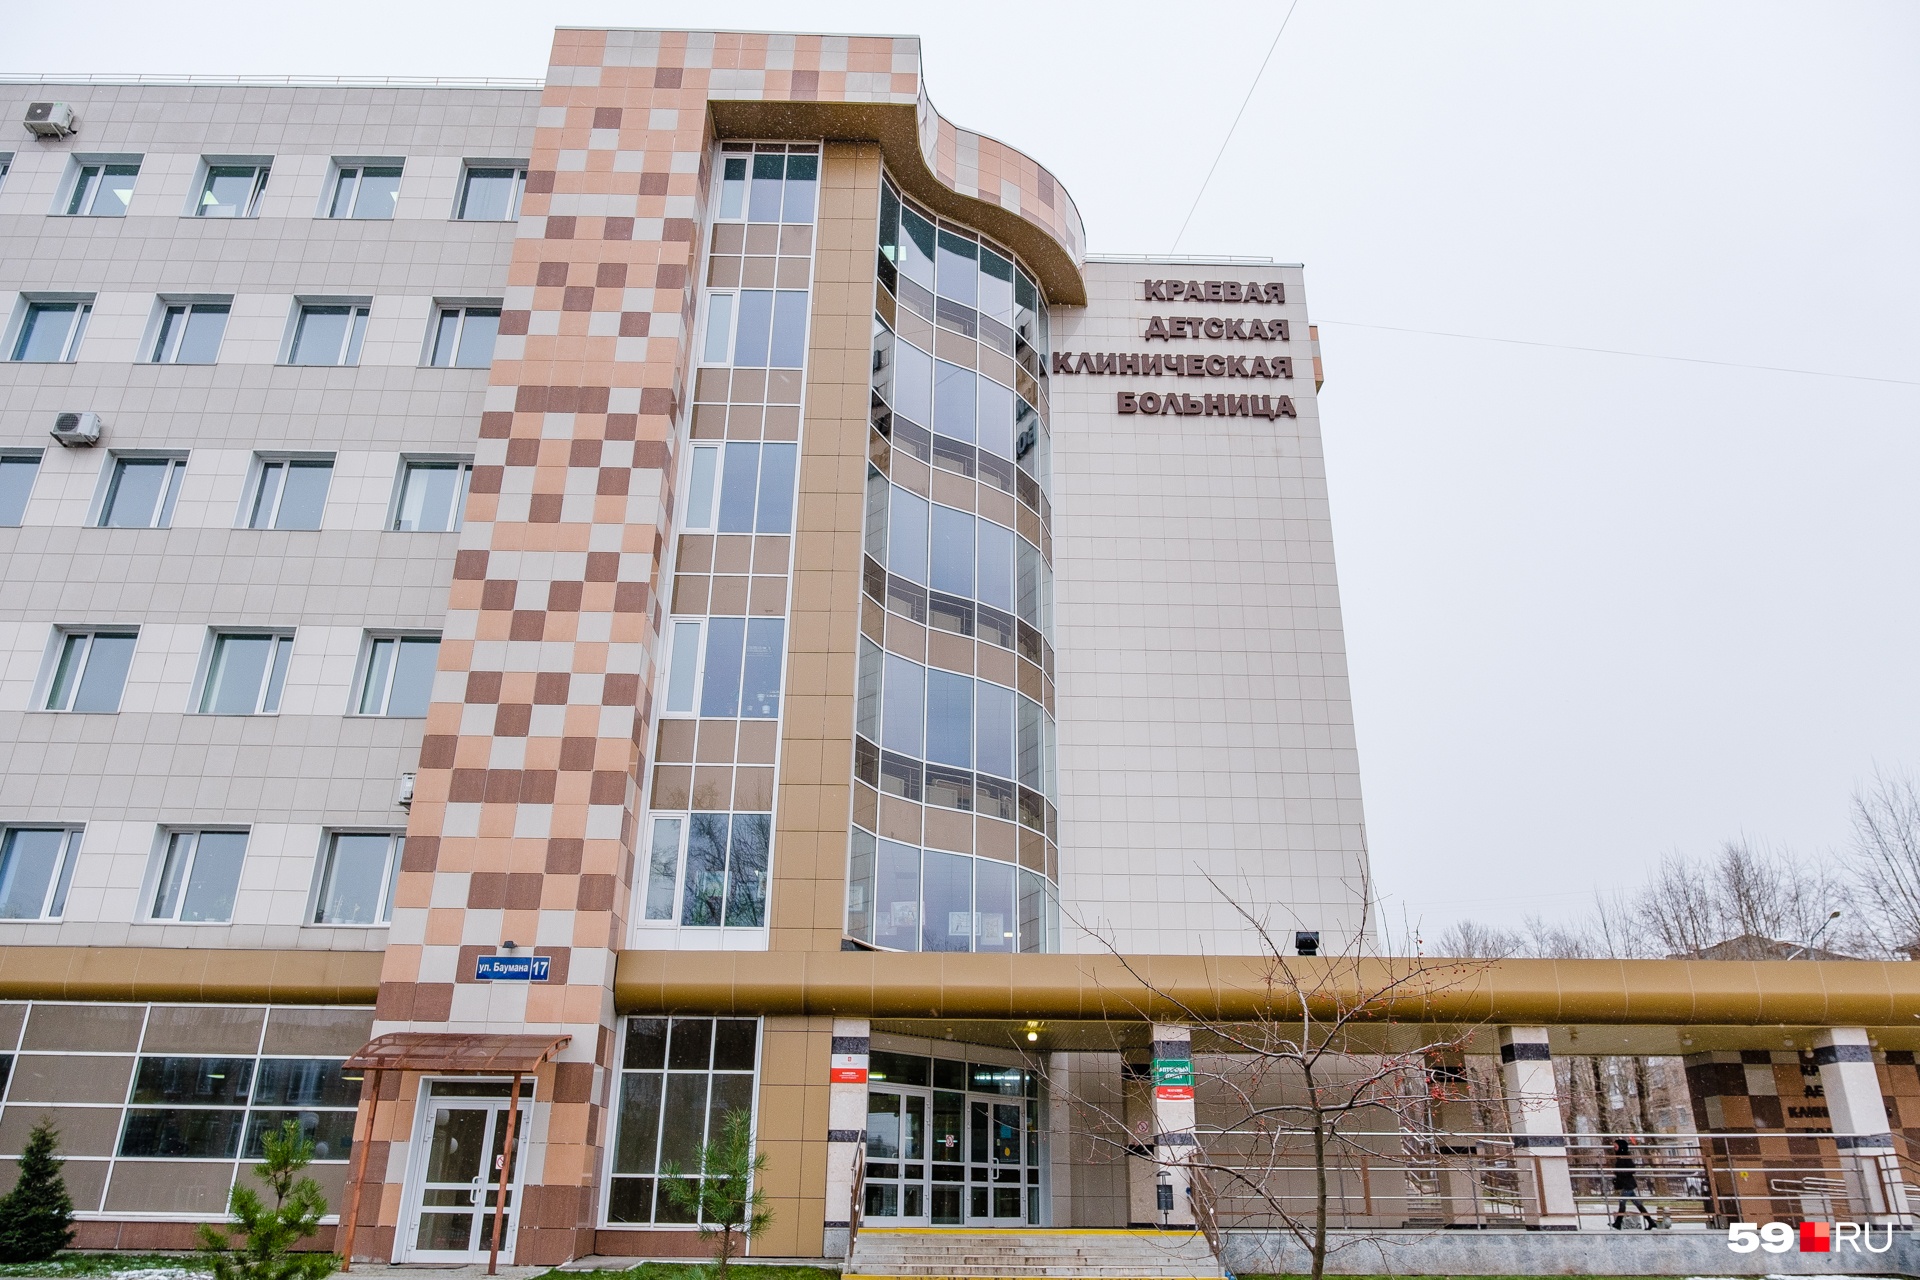 Сайт пермской краевой больницы